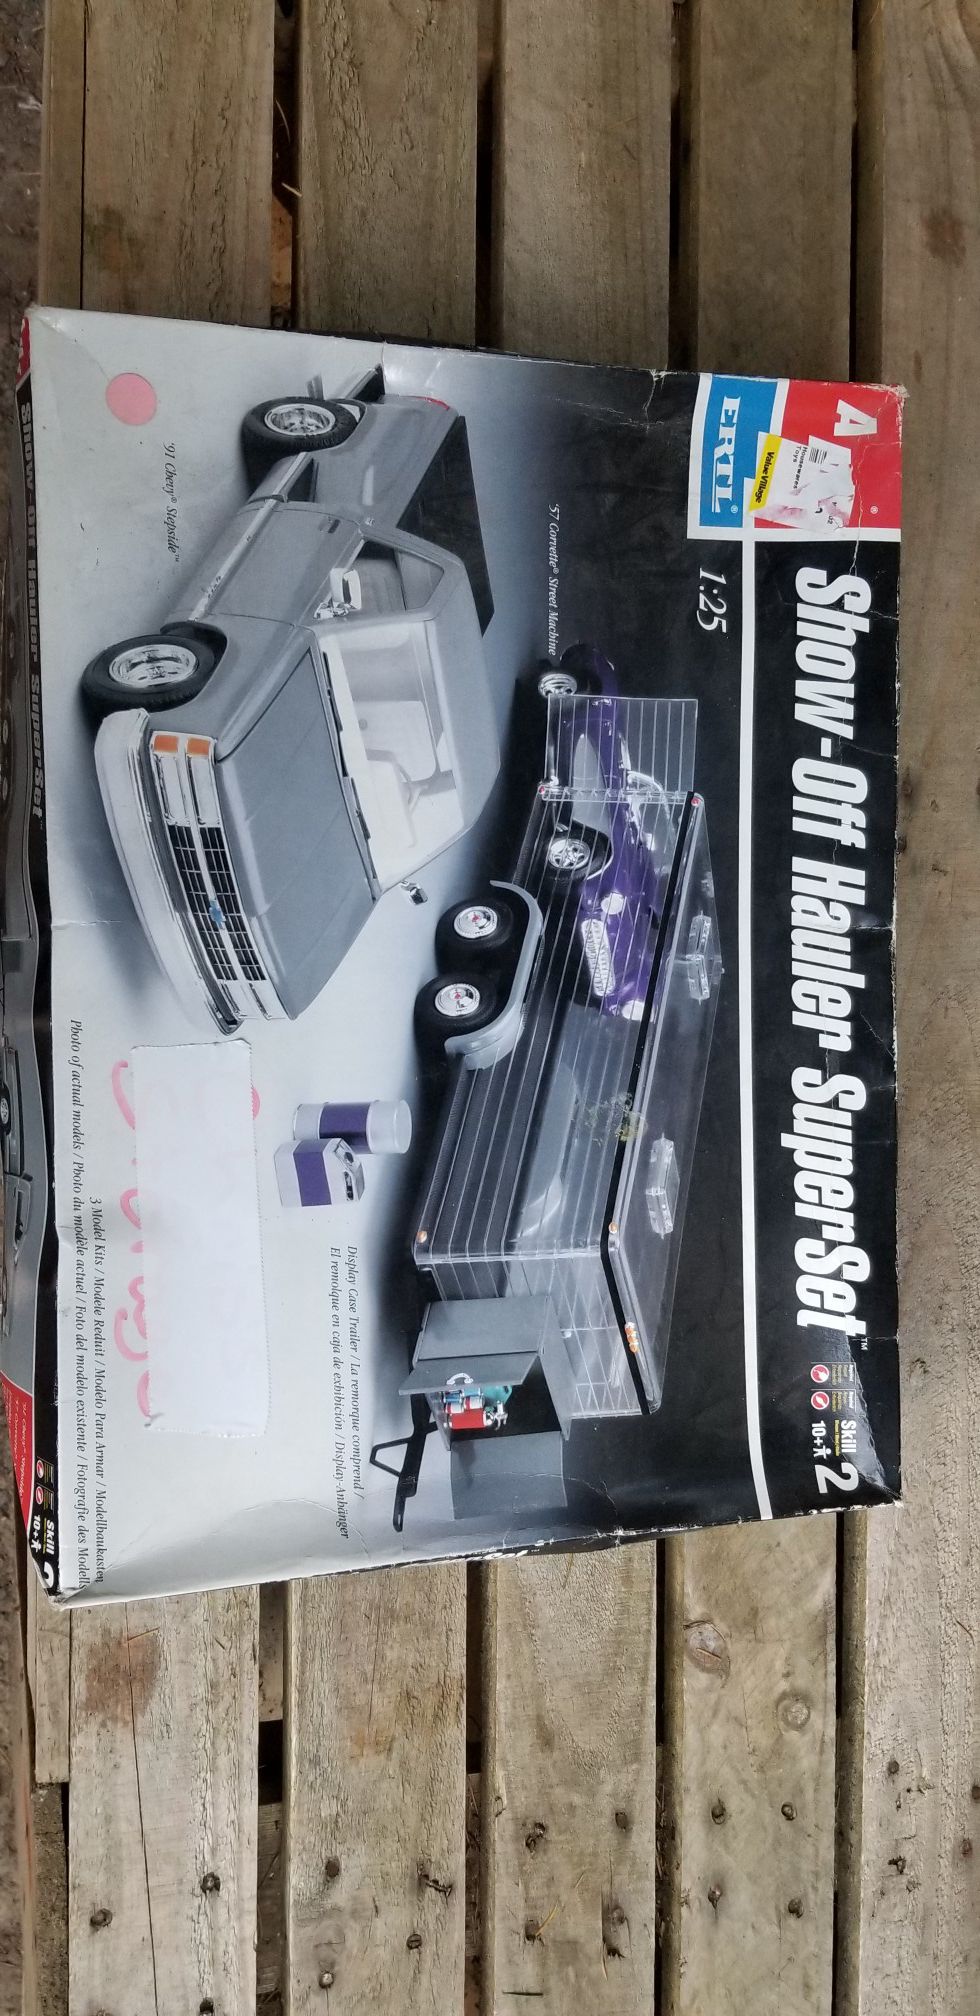 91 Chevy stepside / Corvette toy hauler model kit